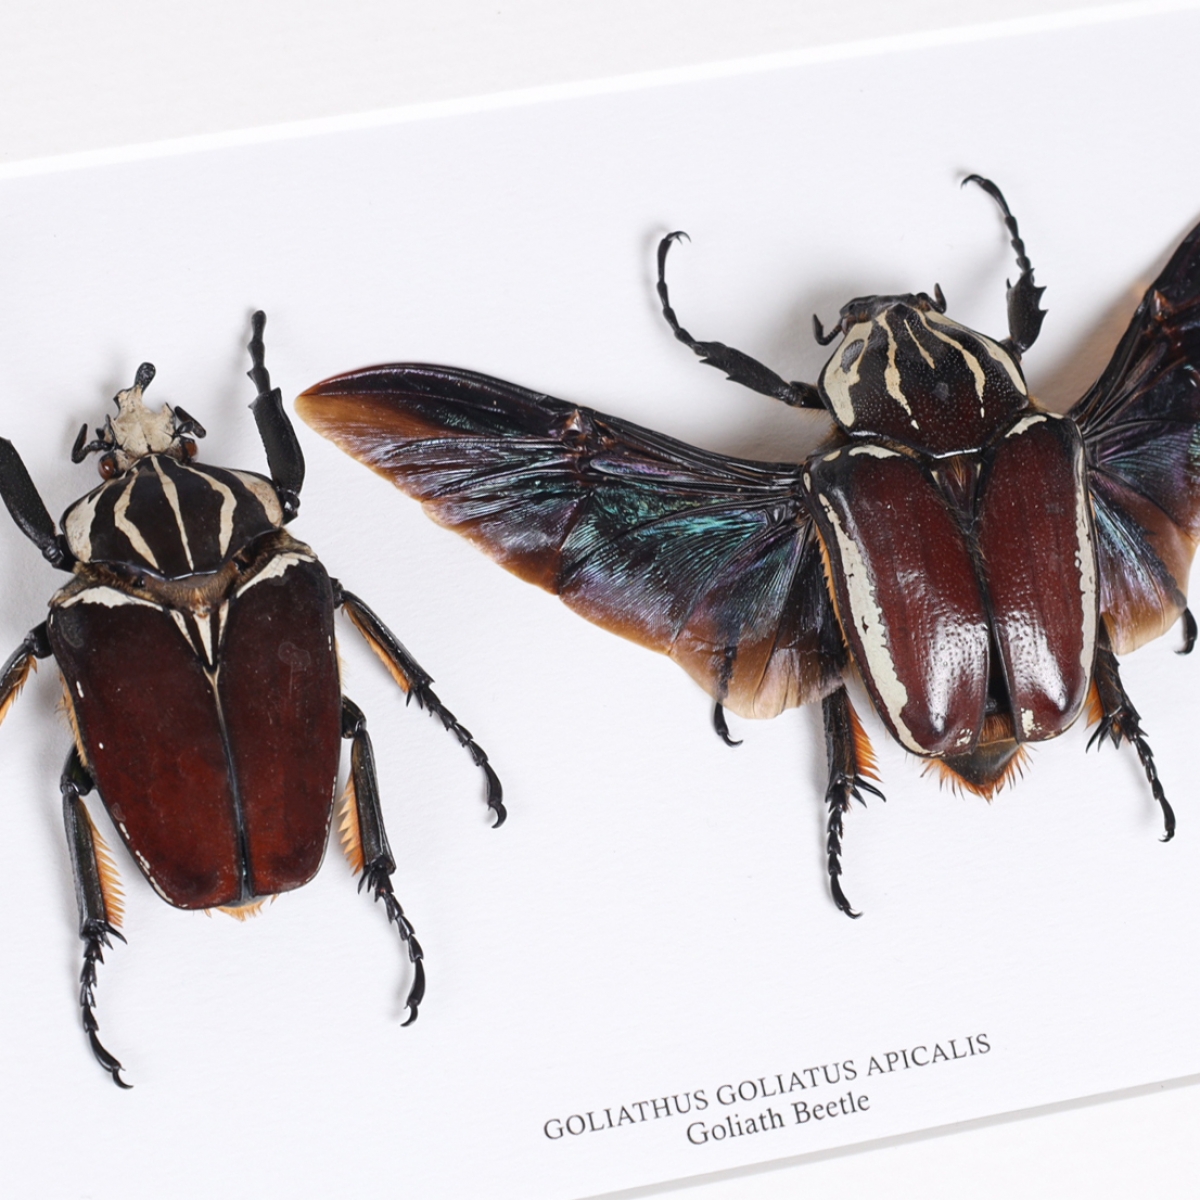 Goliathus goliatus apicalis 90mm CONGO昆虫用品